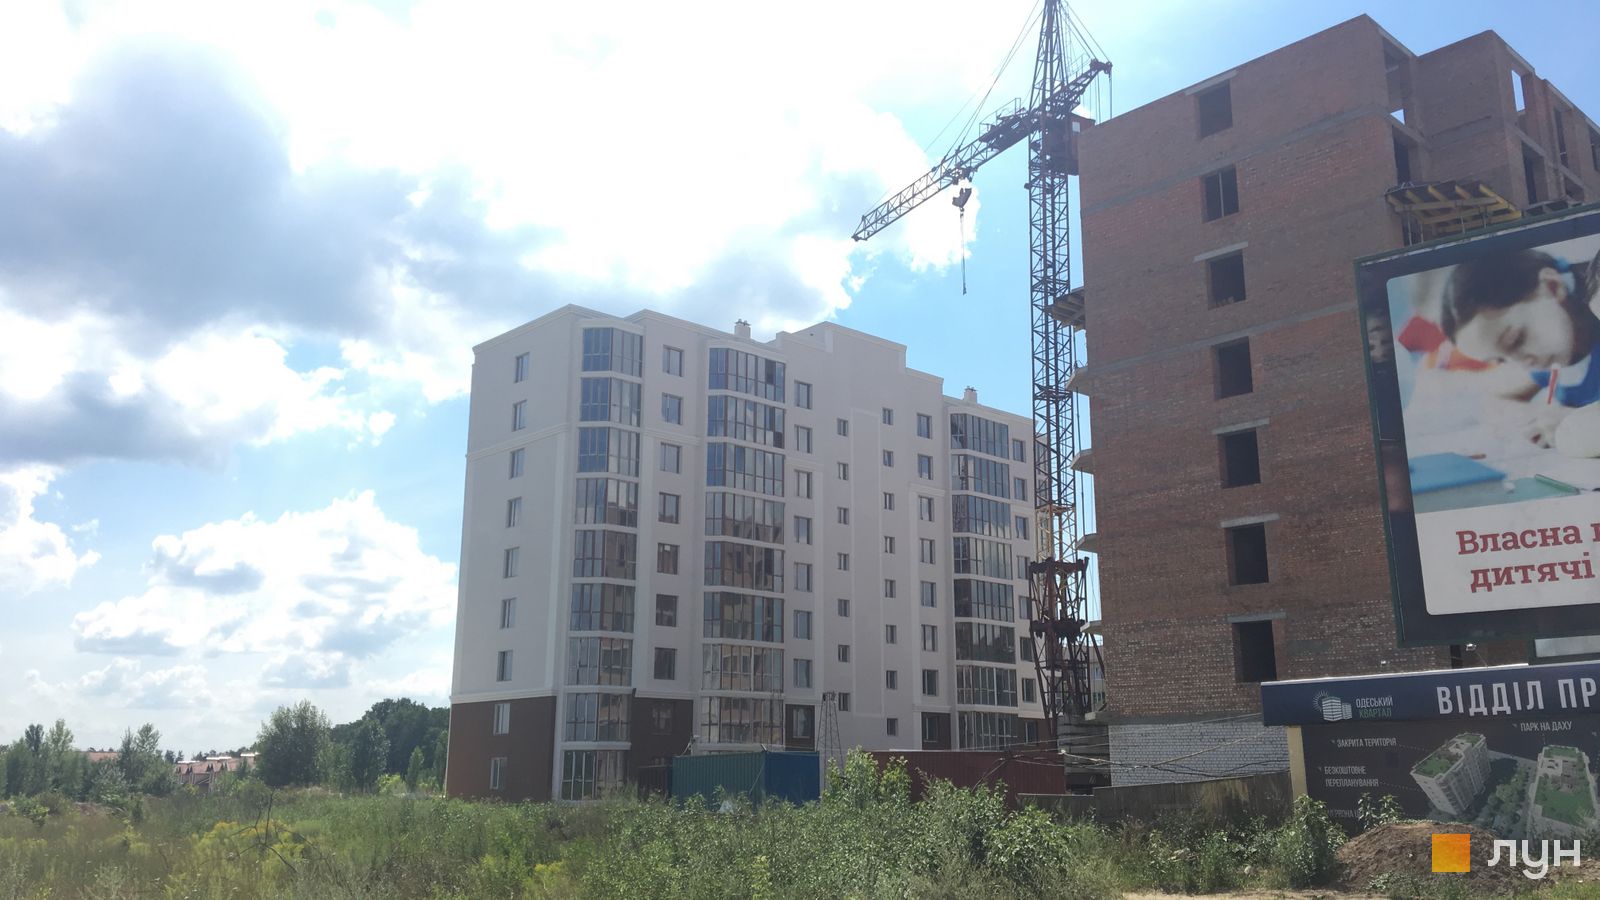 Моніторинг будівництва ЖК Одеський квартал - Ракурс 2, июль 2018